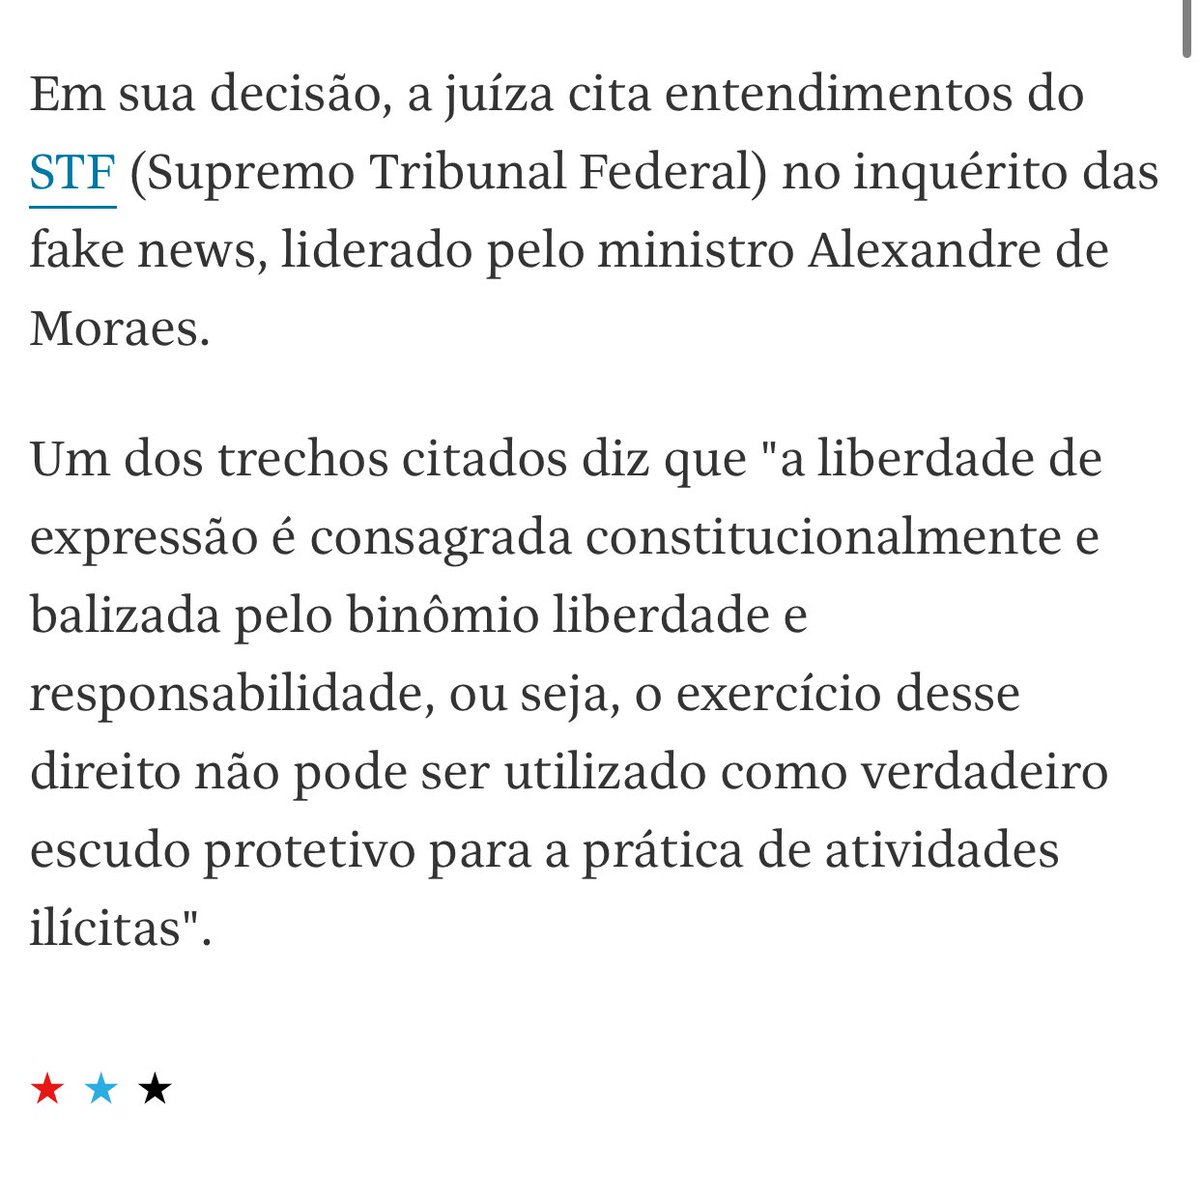 A jurisprudência criada pelo Alexandre de Morais e o STF vem se espalhando pelo o Brasil. Não é o primeiro jornalista preso com base no inquérito das fake news. Não se enganem. Isso só vai parar com leis que explicitamente proíbam juízes e promotores de censurarem.